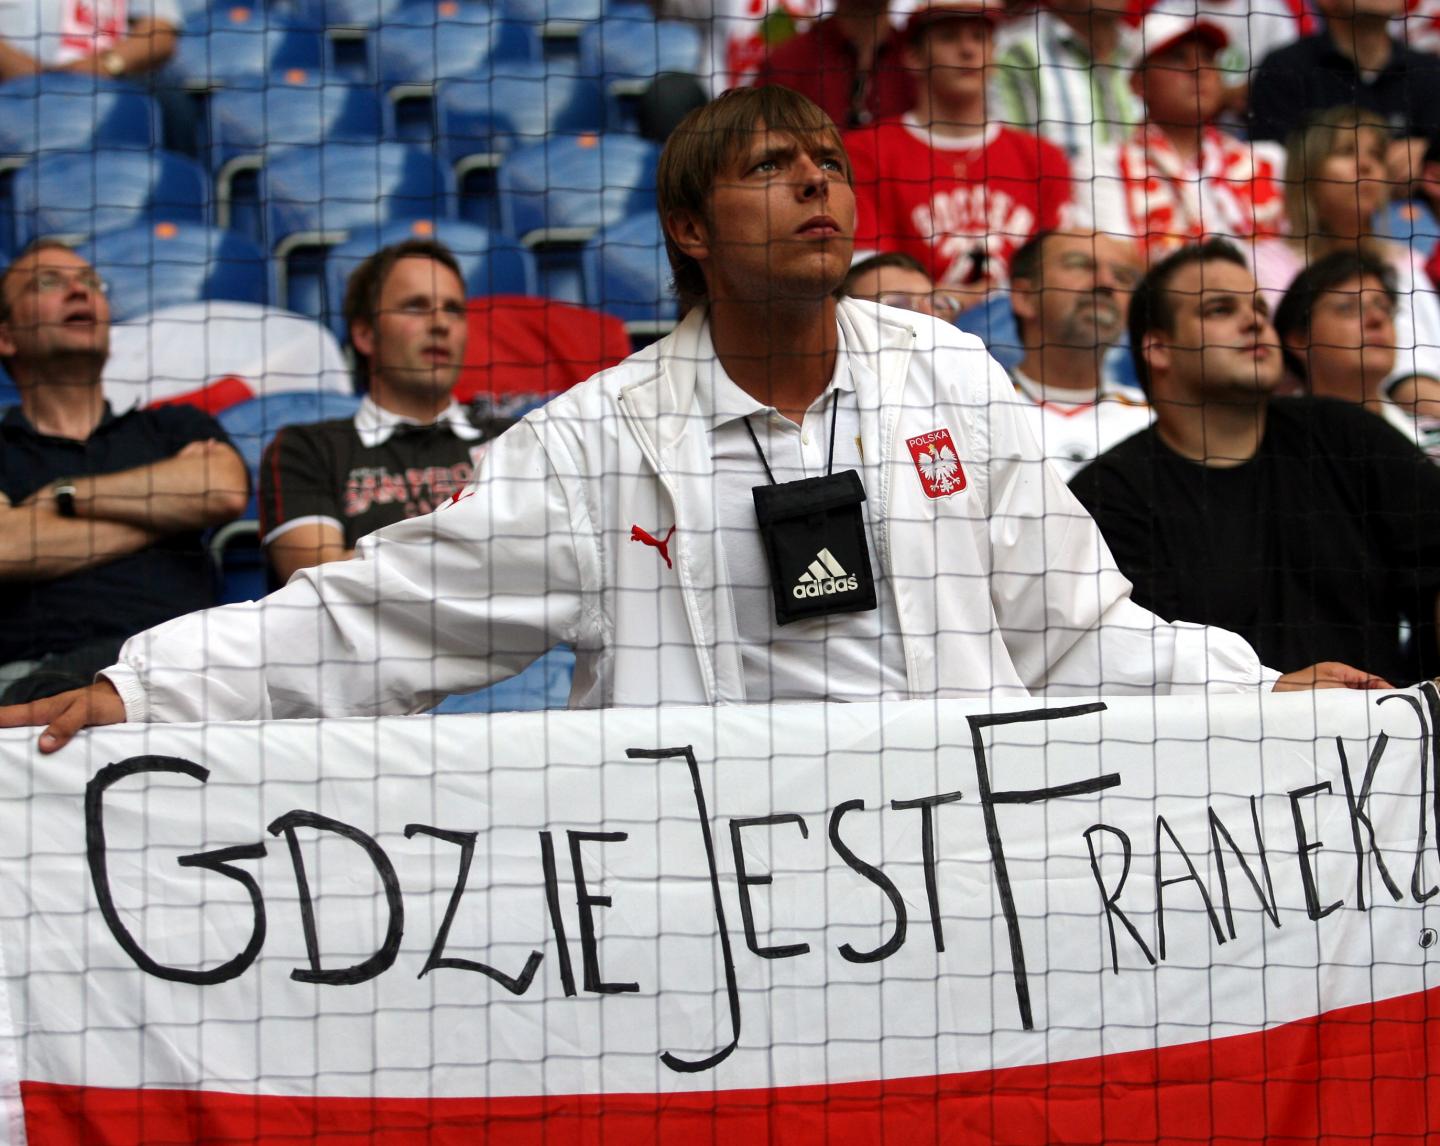 Kibic reprezentacji Polski z biało-czerwoną flagą, na której widnieje zapytanie - Gdzie jest Franek?